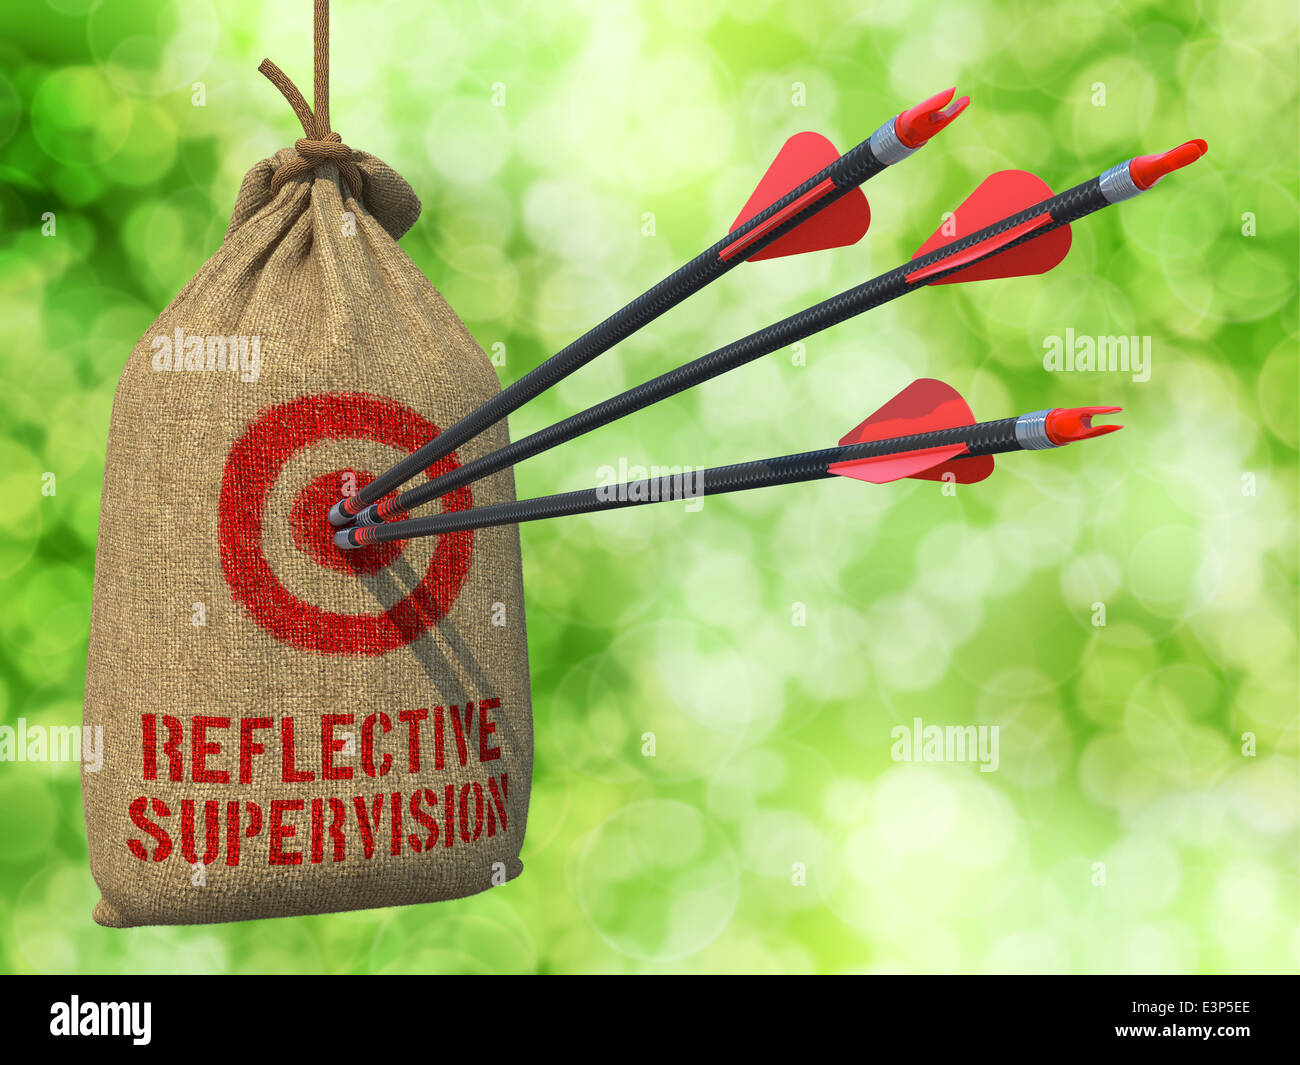 Reflektierenden Supervision - Pfeile treffen im Ziel. Stockfoto